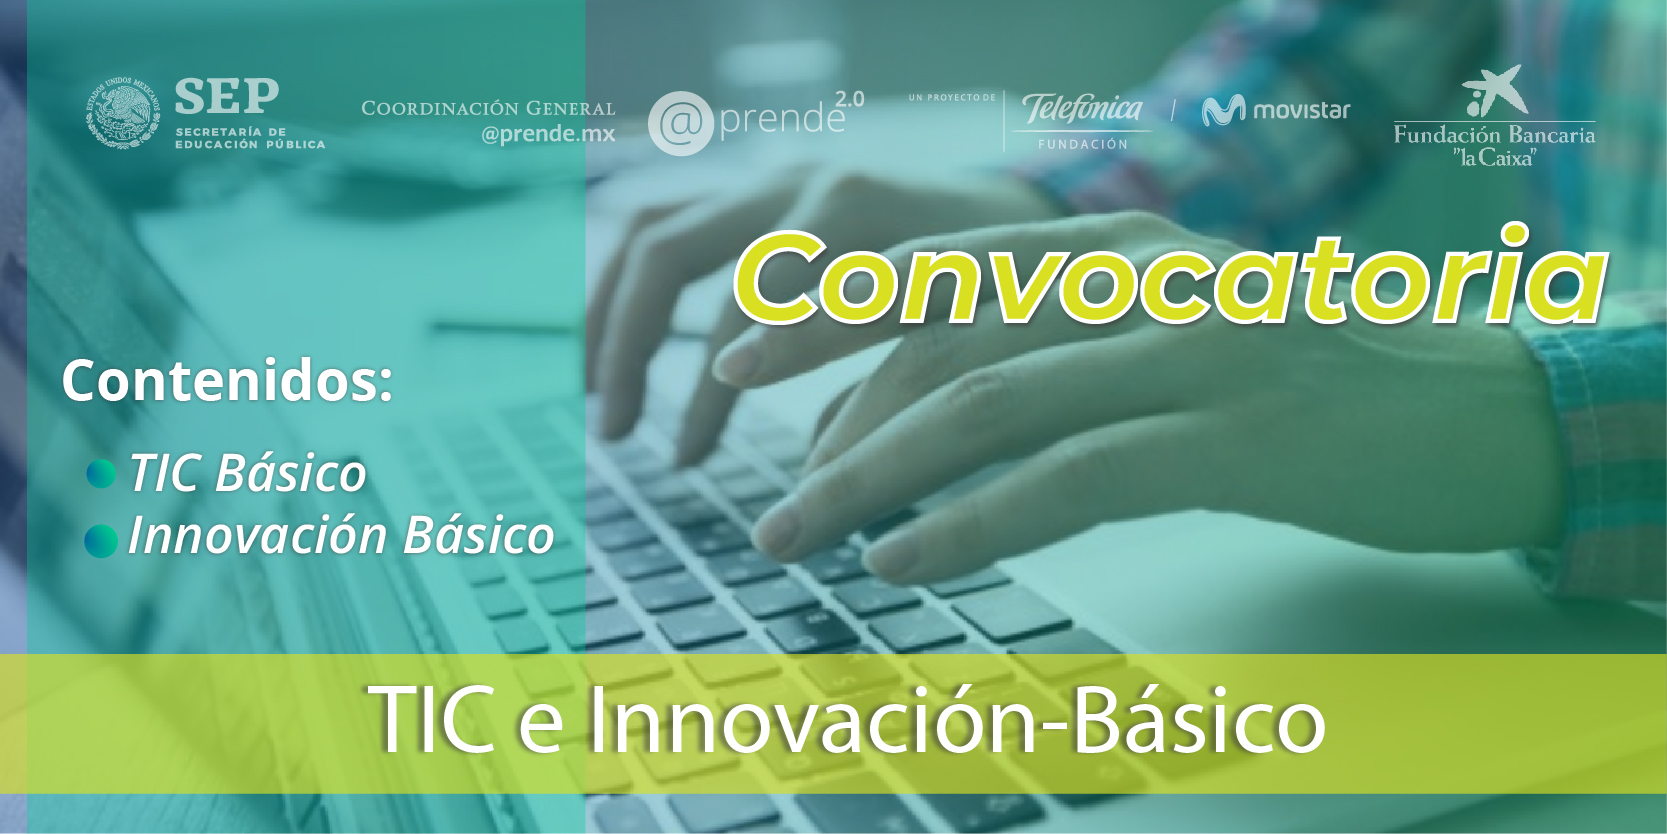 Convocatoria: TIC e Innovación Básico